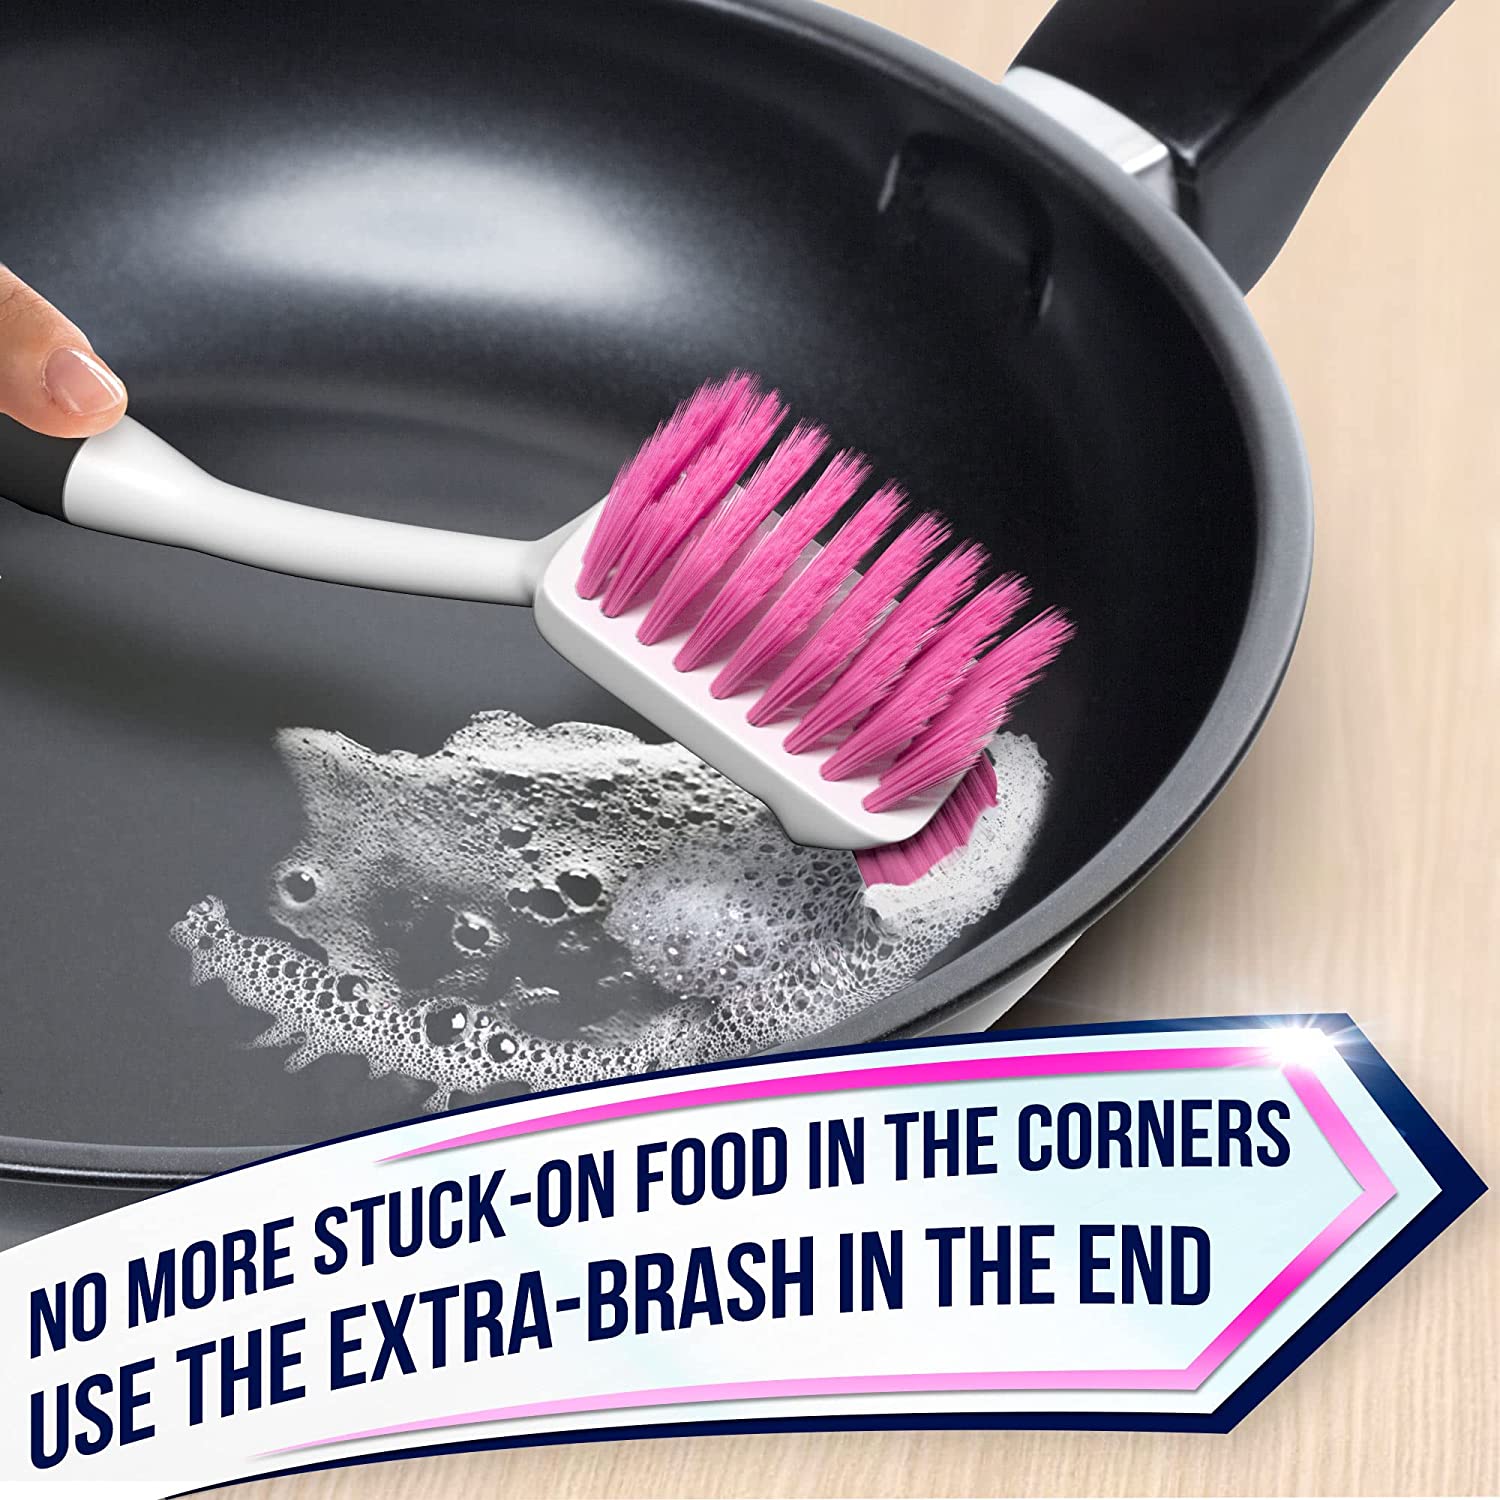 Dish Brush Set of 3 with Bottle Water Brush, Dish Scrub Brush and Scru –  Trazon Store